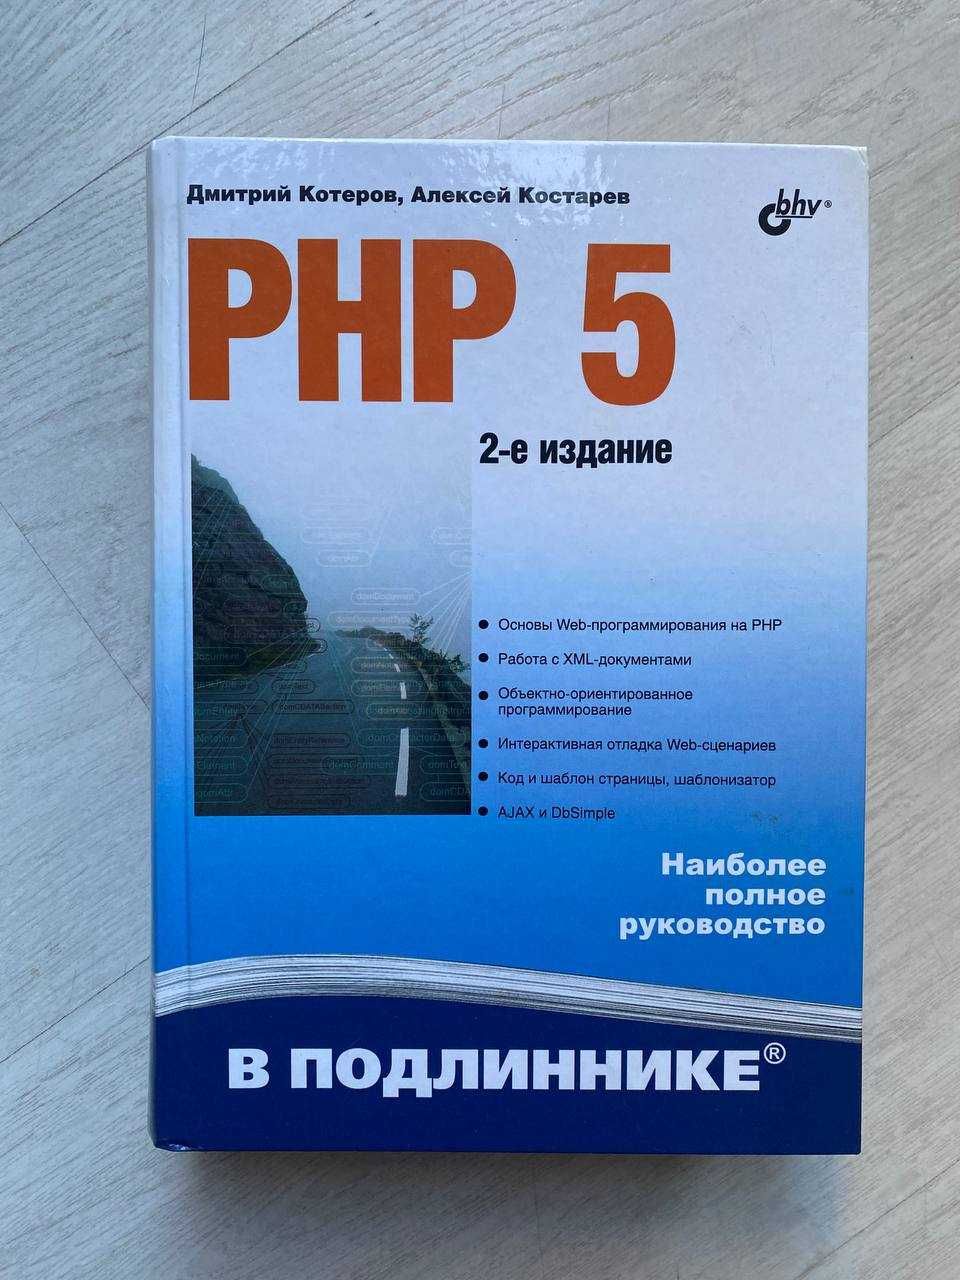 Книга: PHP 5 2-е изд. Авторы: Дмитрий Котеров, Алексей Костарев.